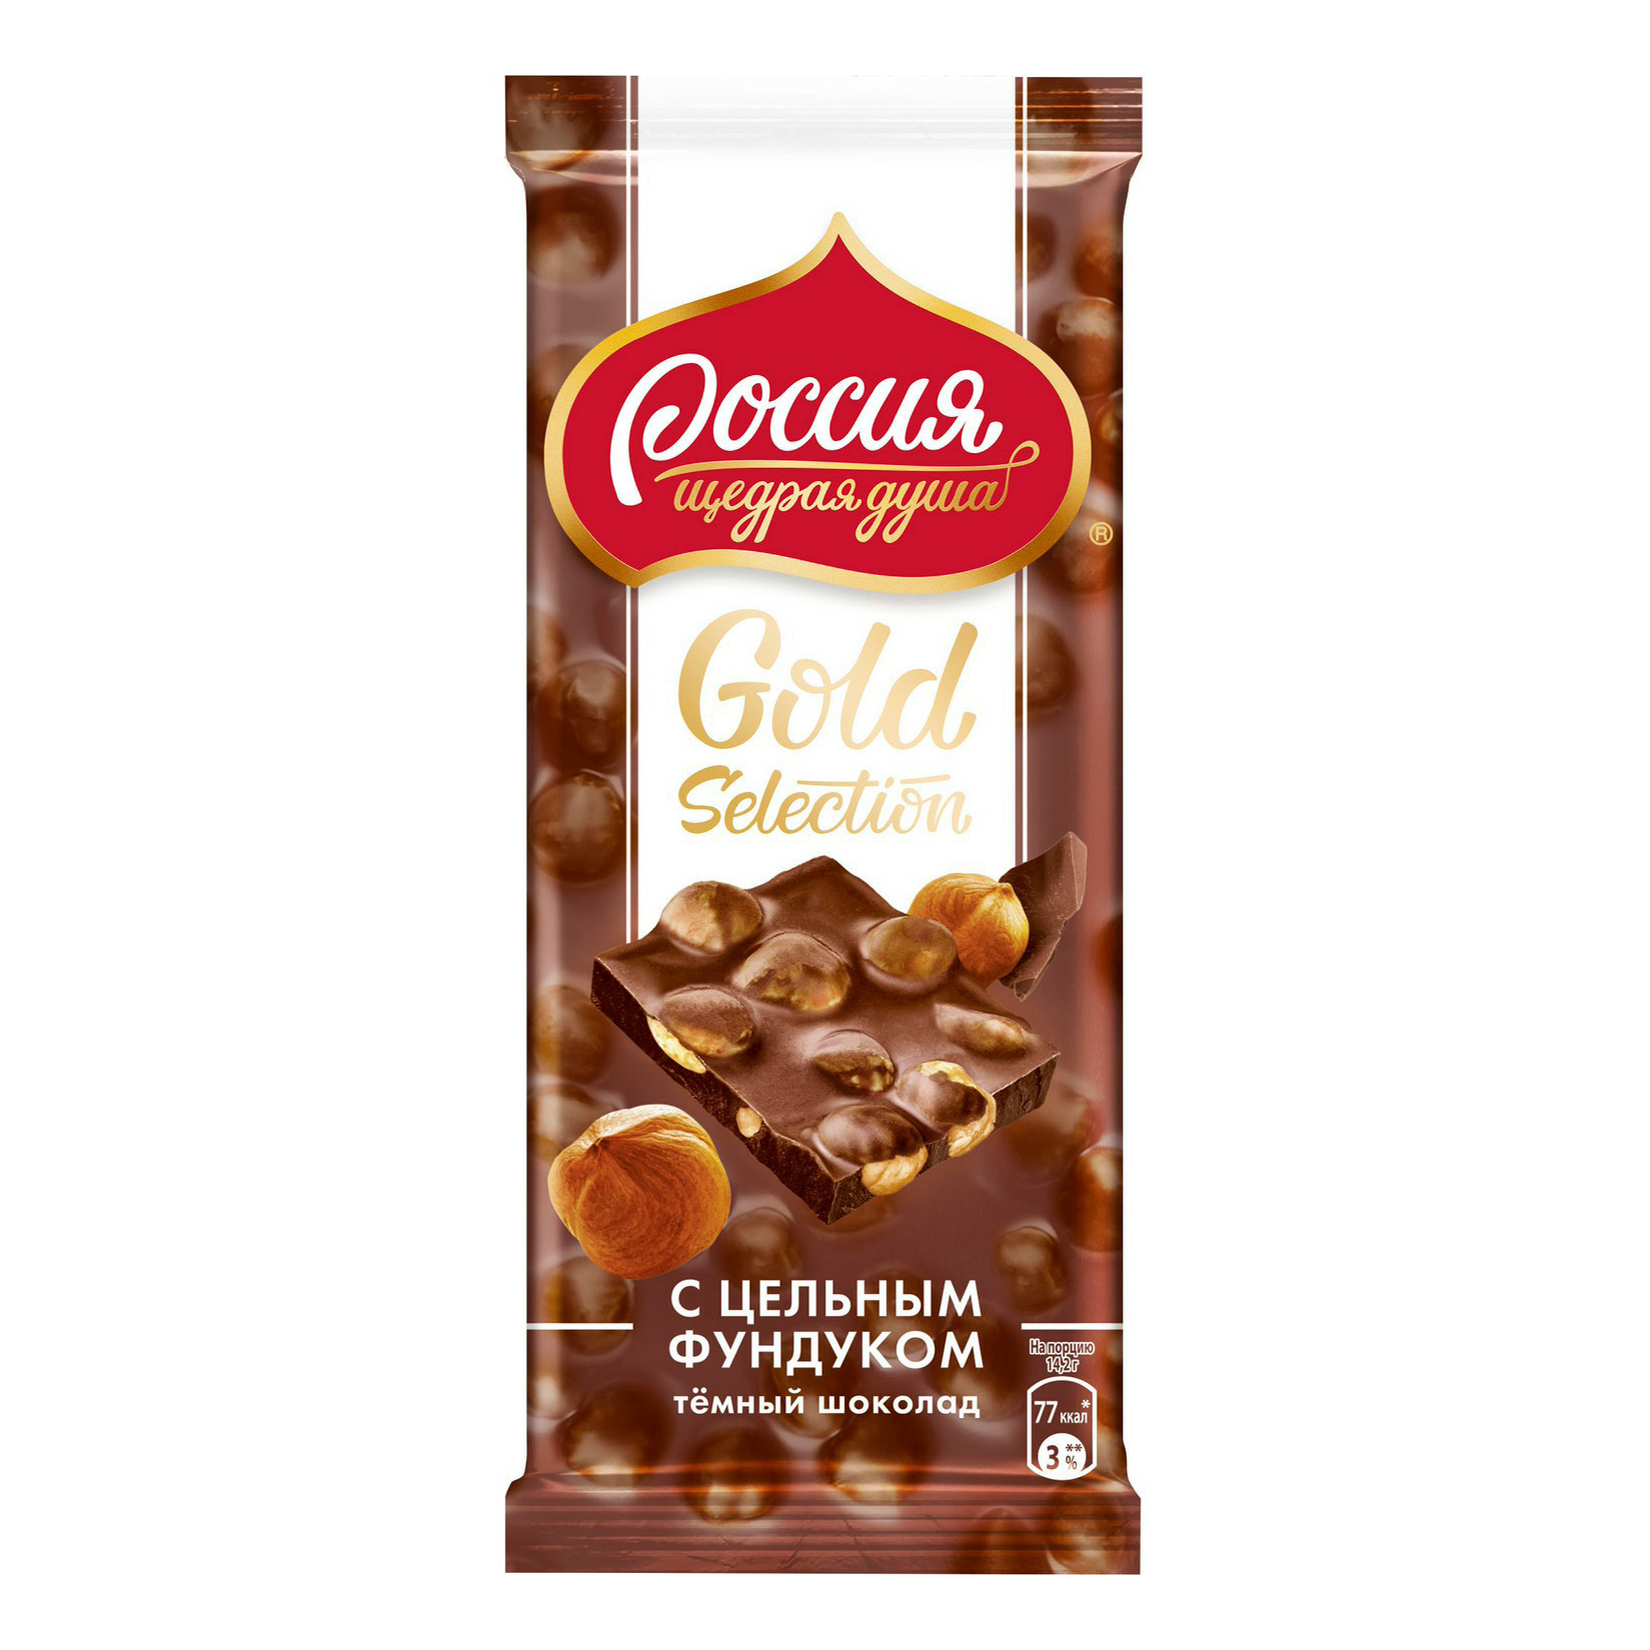 Шоколад Россия - щедрая душа! Gold Selection темный с фундуком 85 г